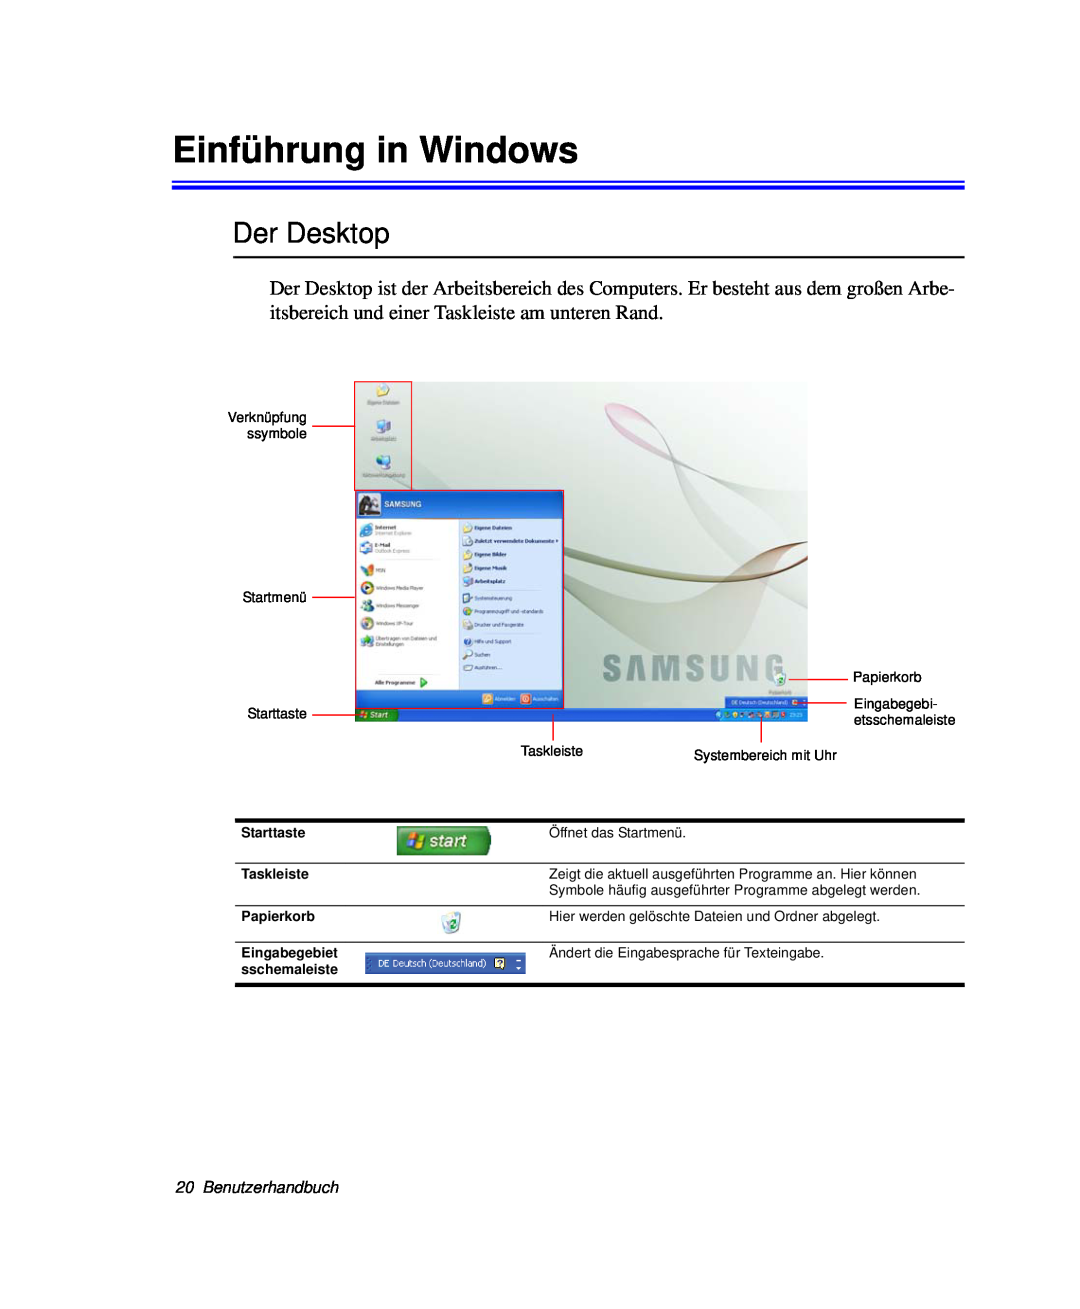 Samsung NP-R40K007/SEG, NP-R40FY0B/SEG, NP-R40FY03/SEG, NP-R40FY01/SEG Einführung in Windows, Der Desktop, Benutzerhandbuch 